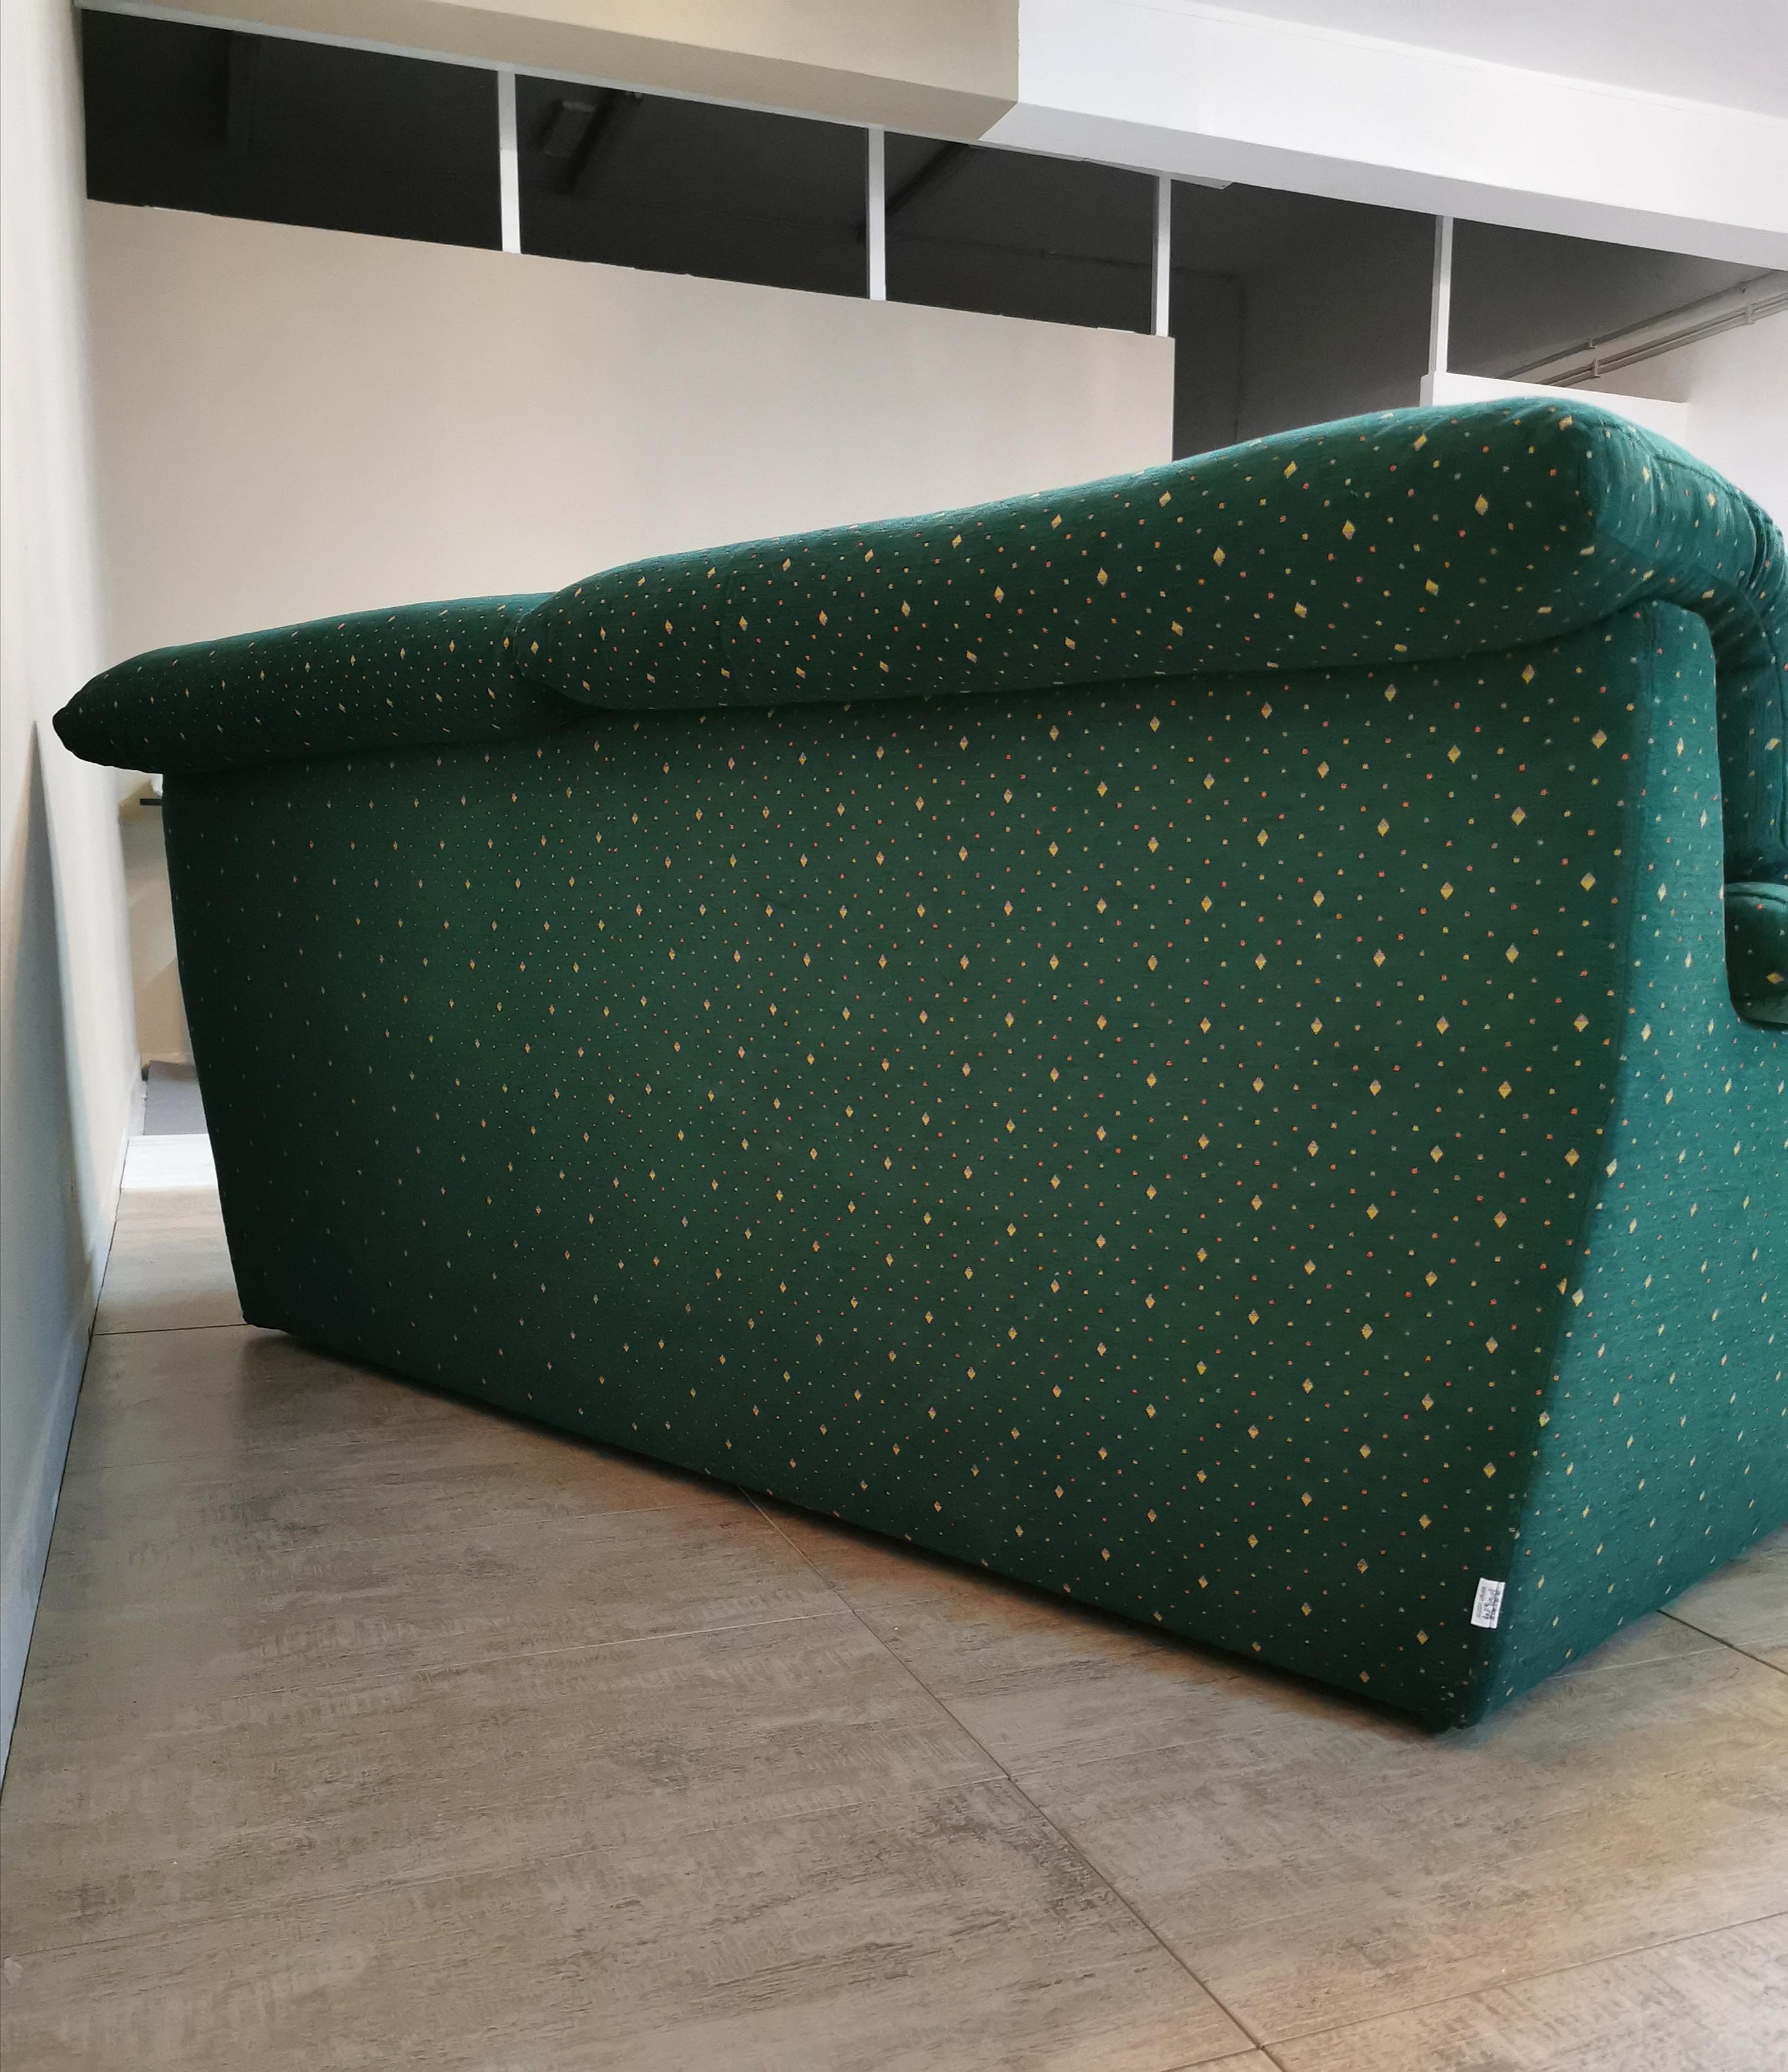  Sofa Green Velvet 3 Seat by Pol 74 Postmodern Italian Design 1990s 2